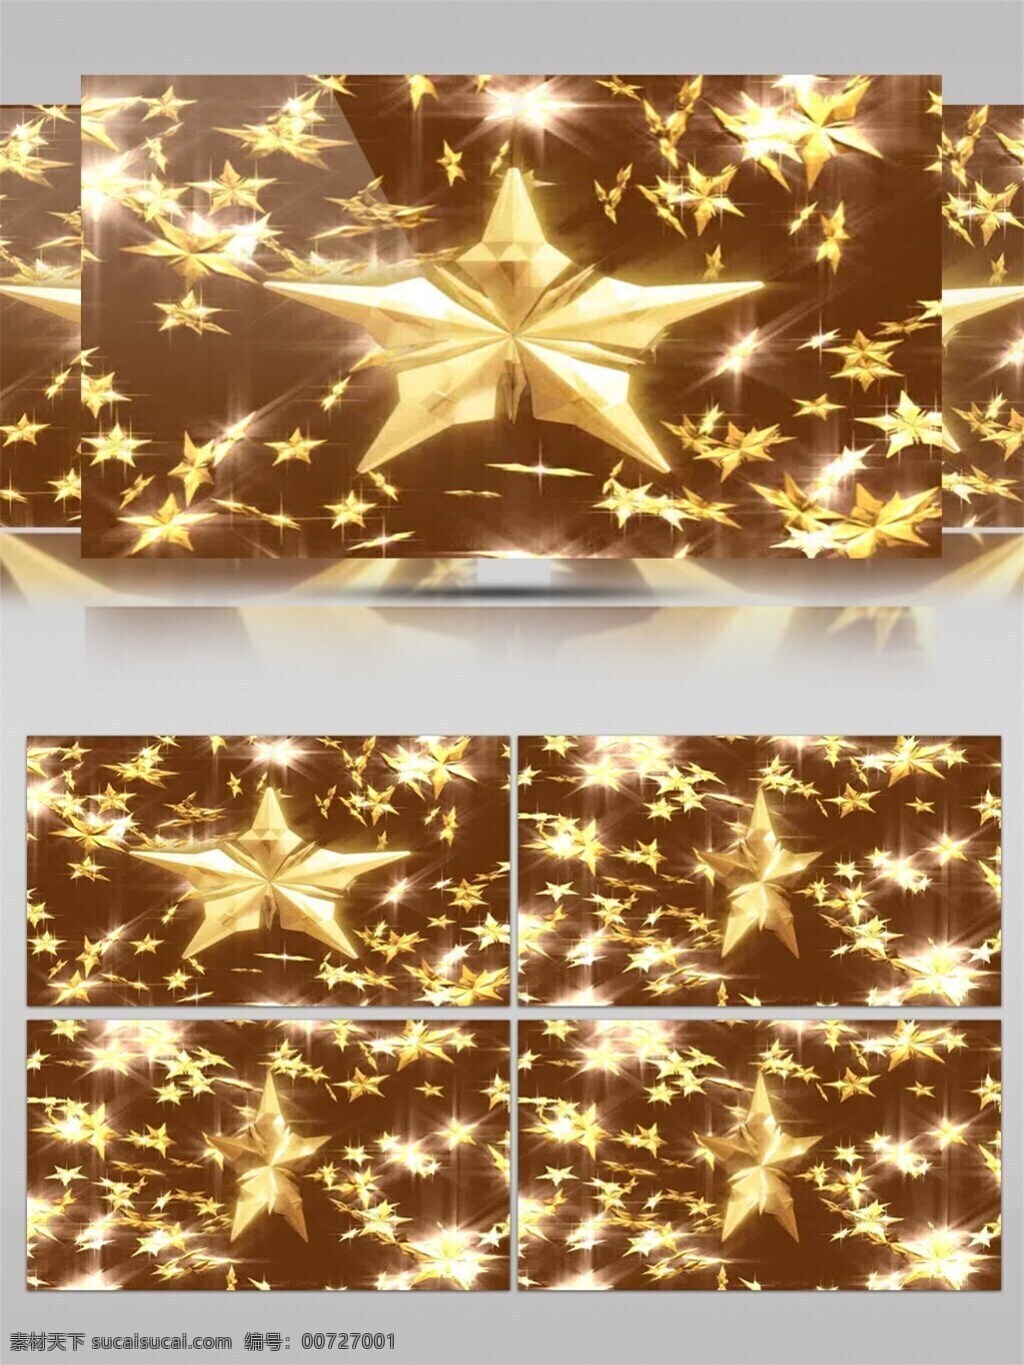 金色 五角星 圣诞节 视频 节日壁纸 节日庆祝 炫酷五角星 装饰五角星